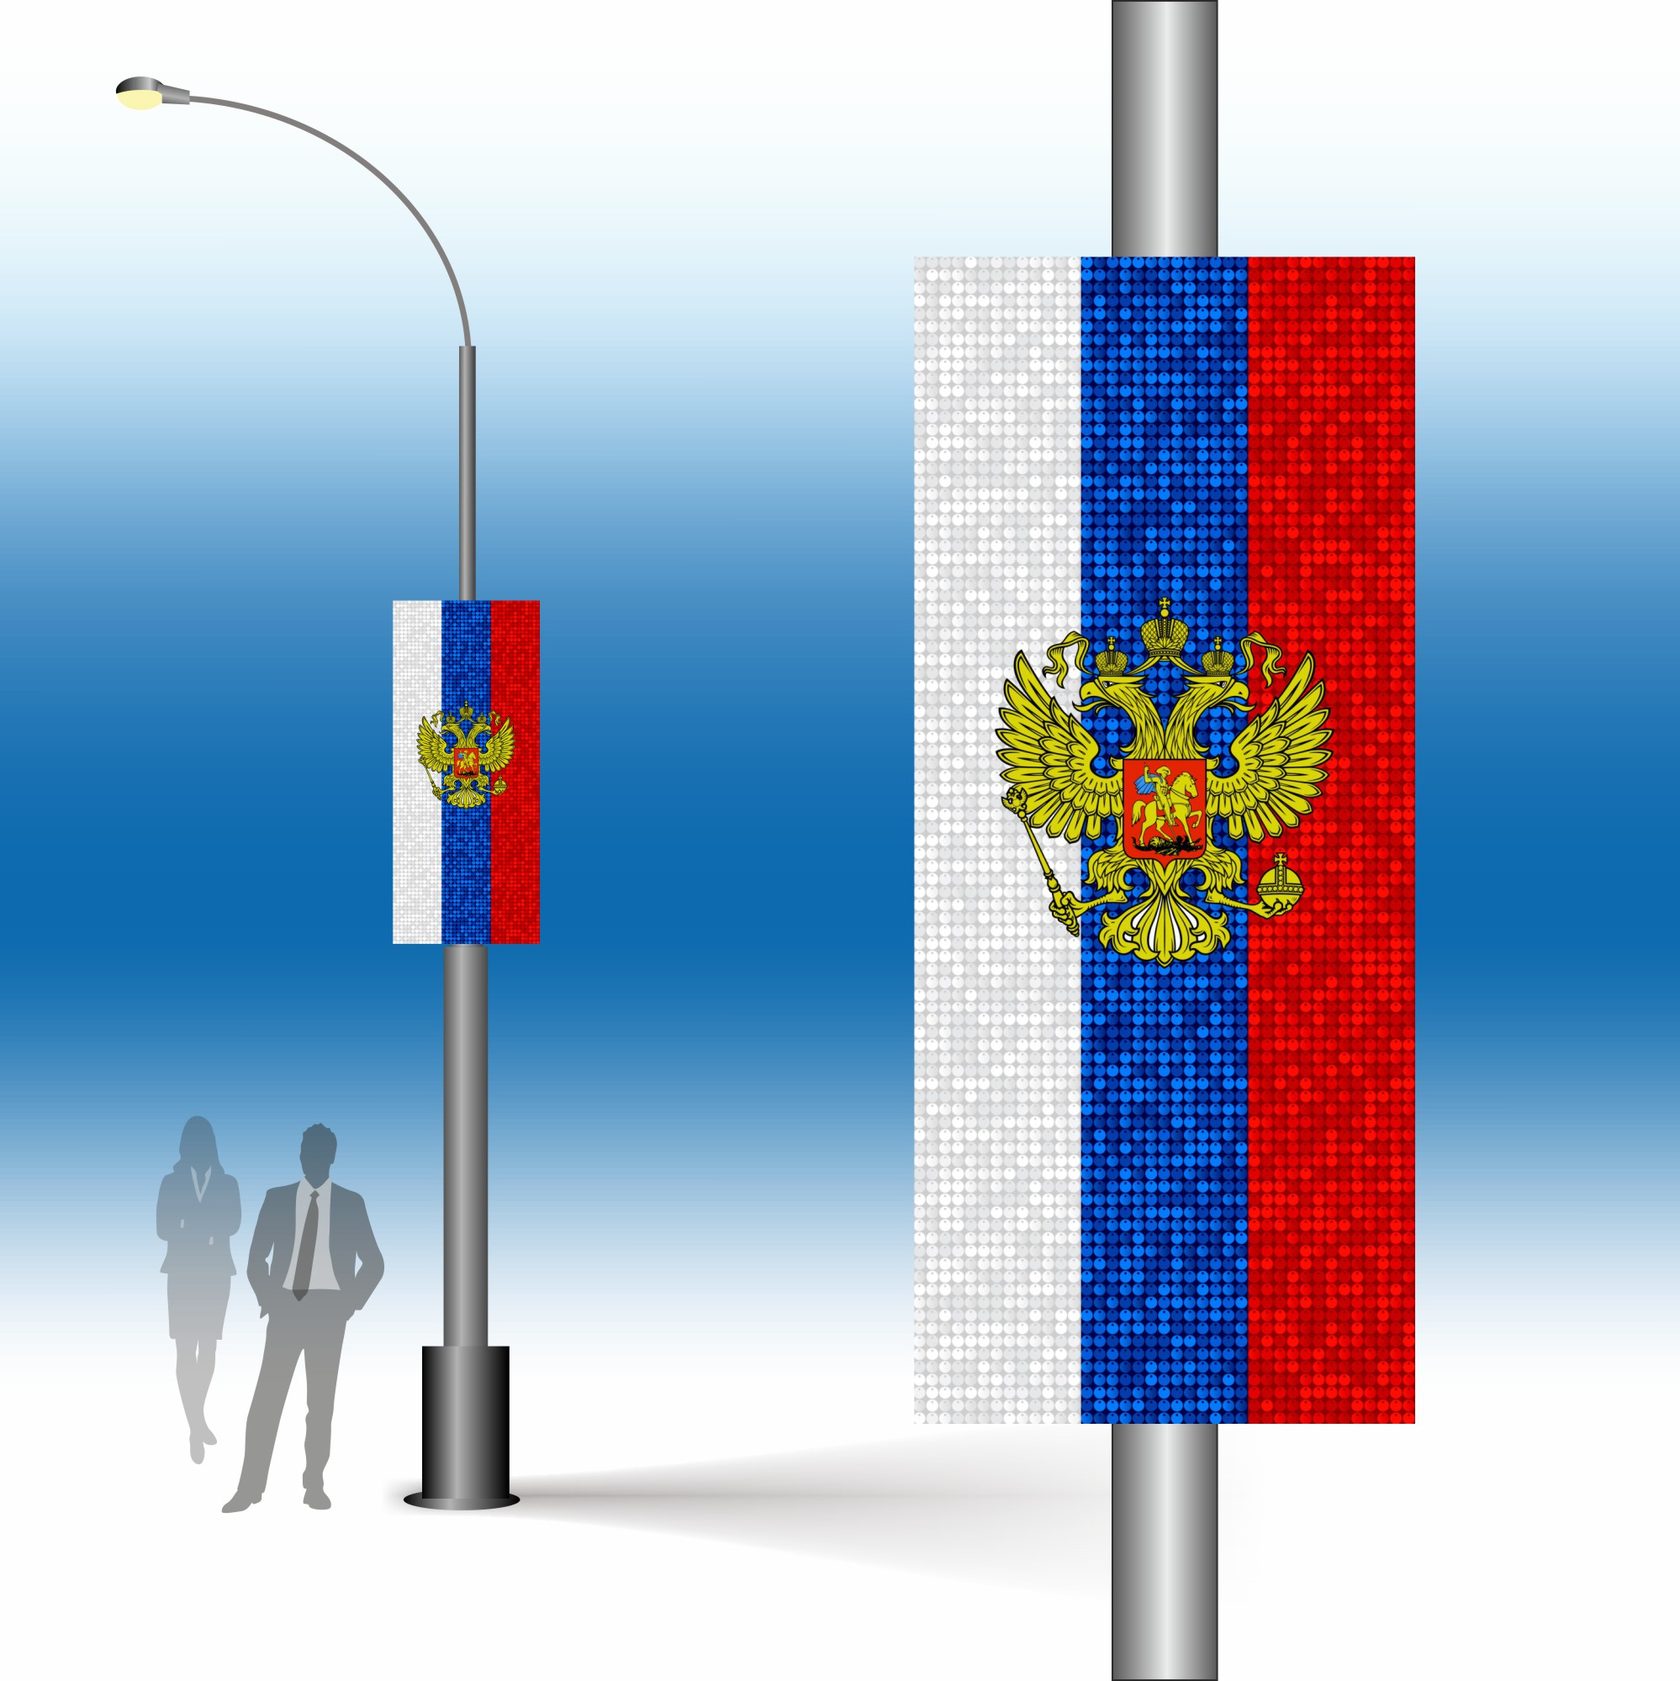 как правильно вывешивать флаги в москве